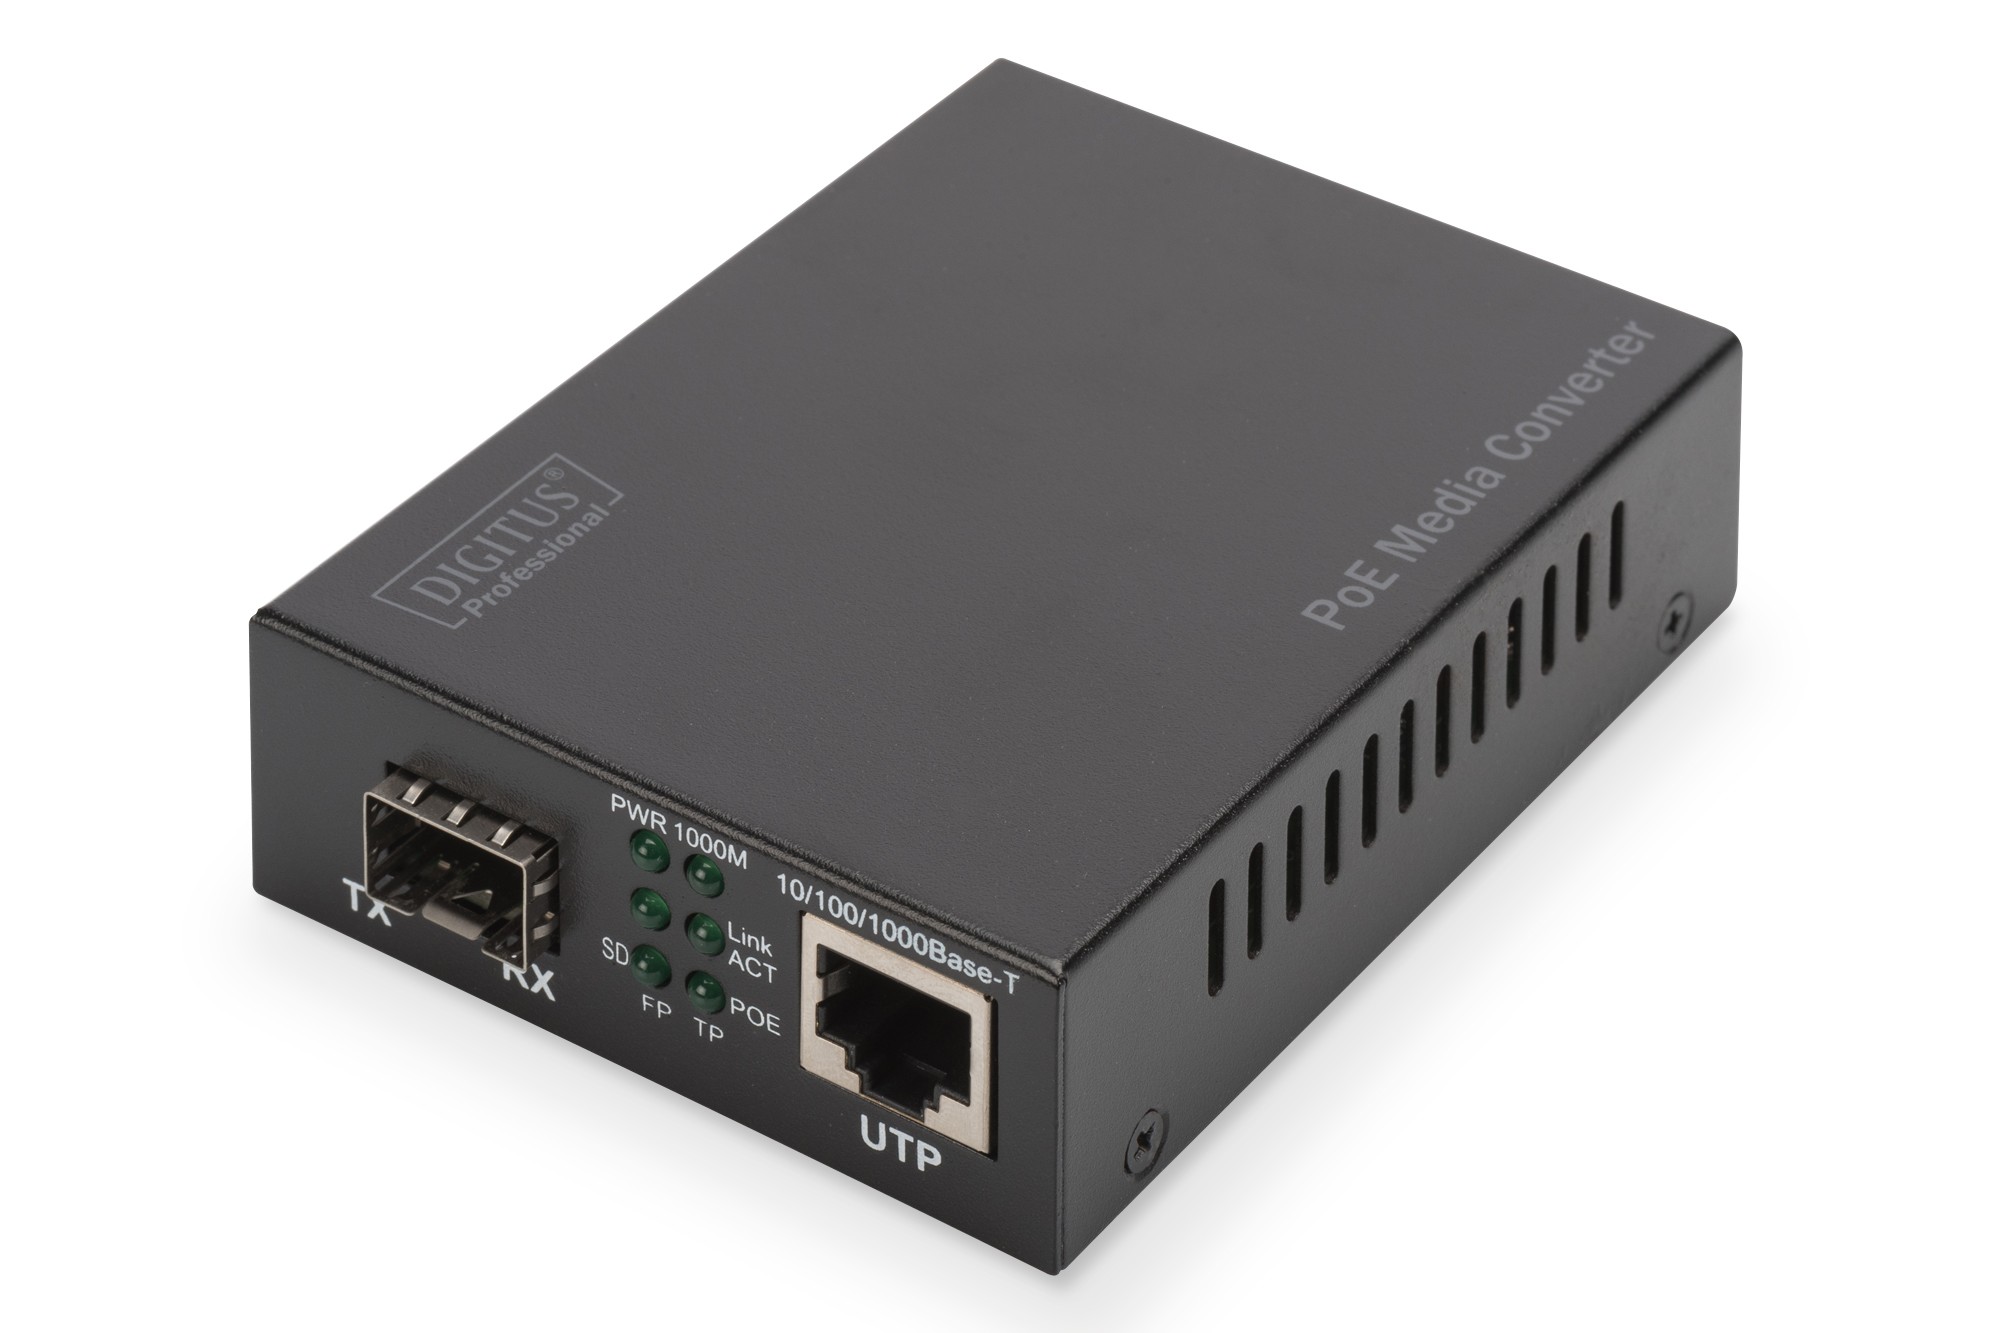 DN-82140  Convertidor de Medios SFP Open slot Gigabit POE+ RJ45 / SFP 802.3at, 30W